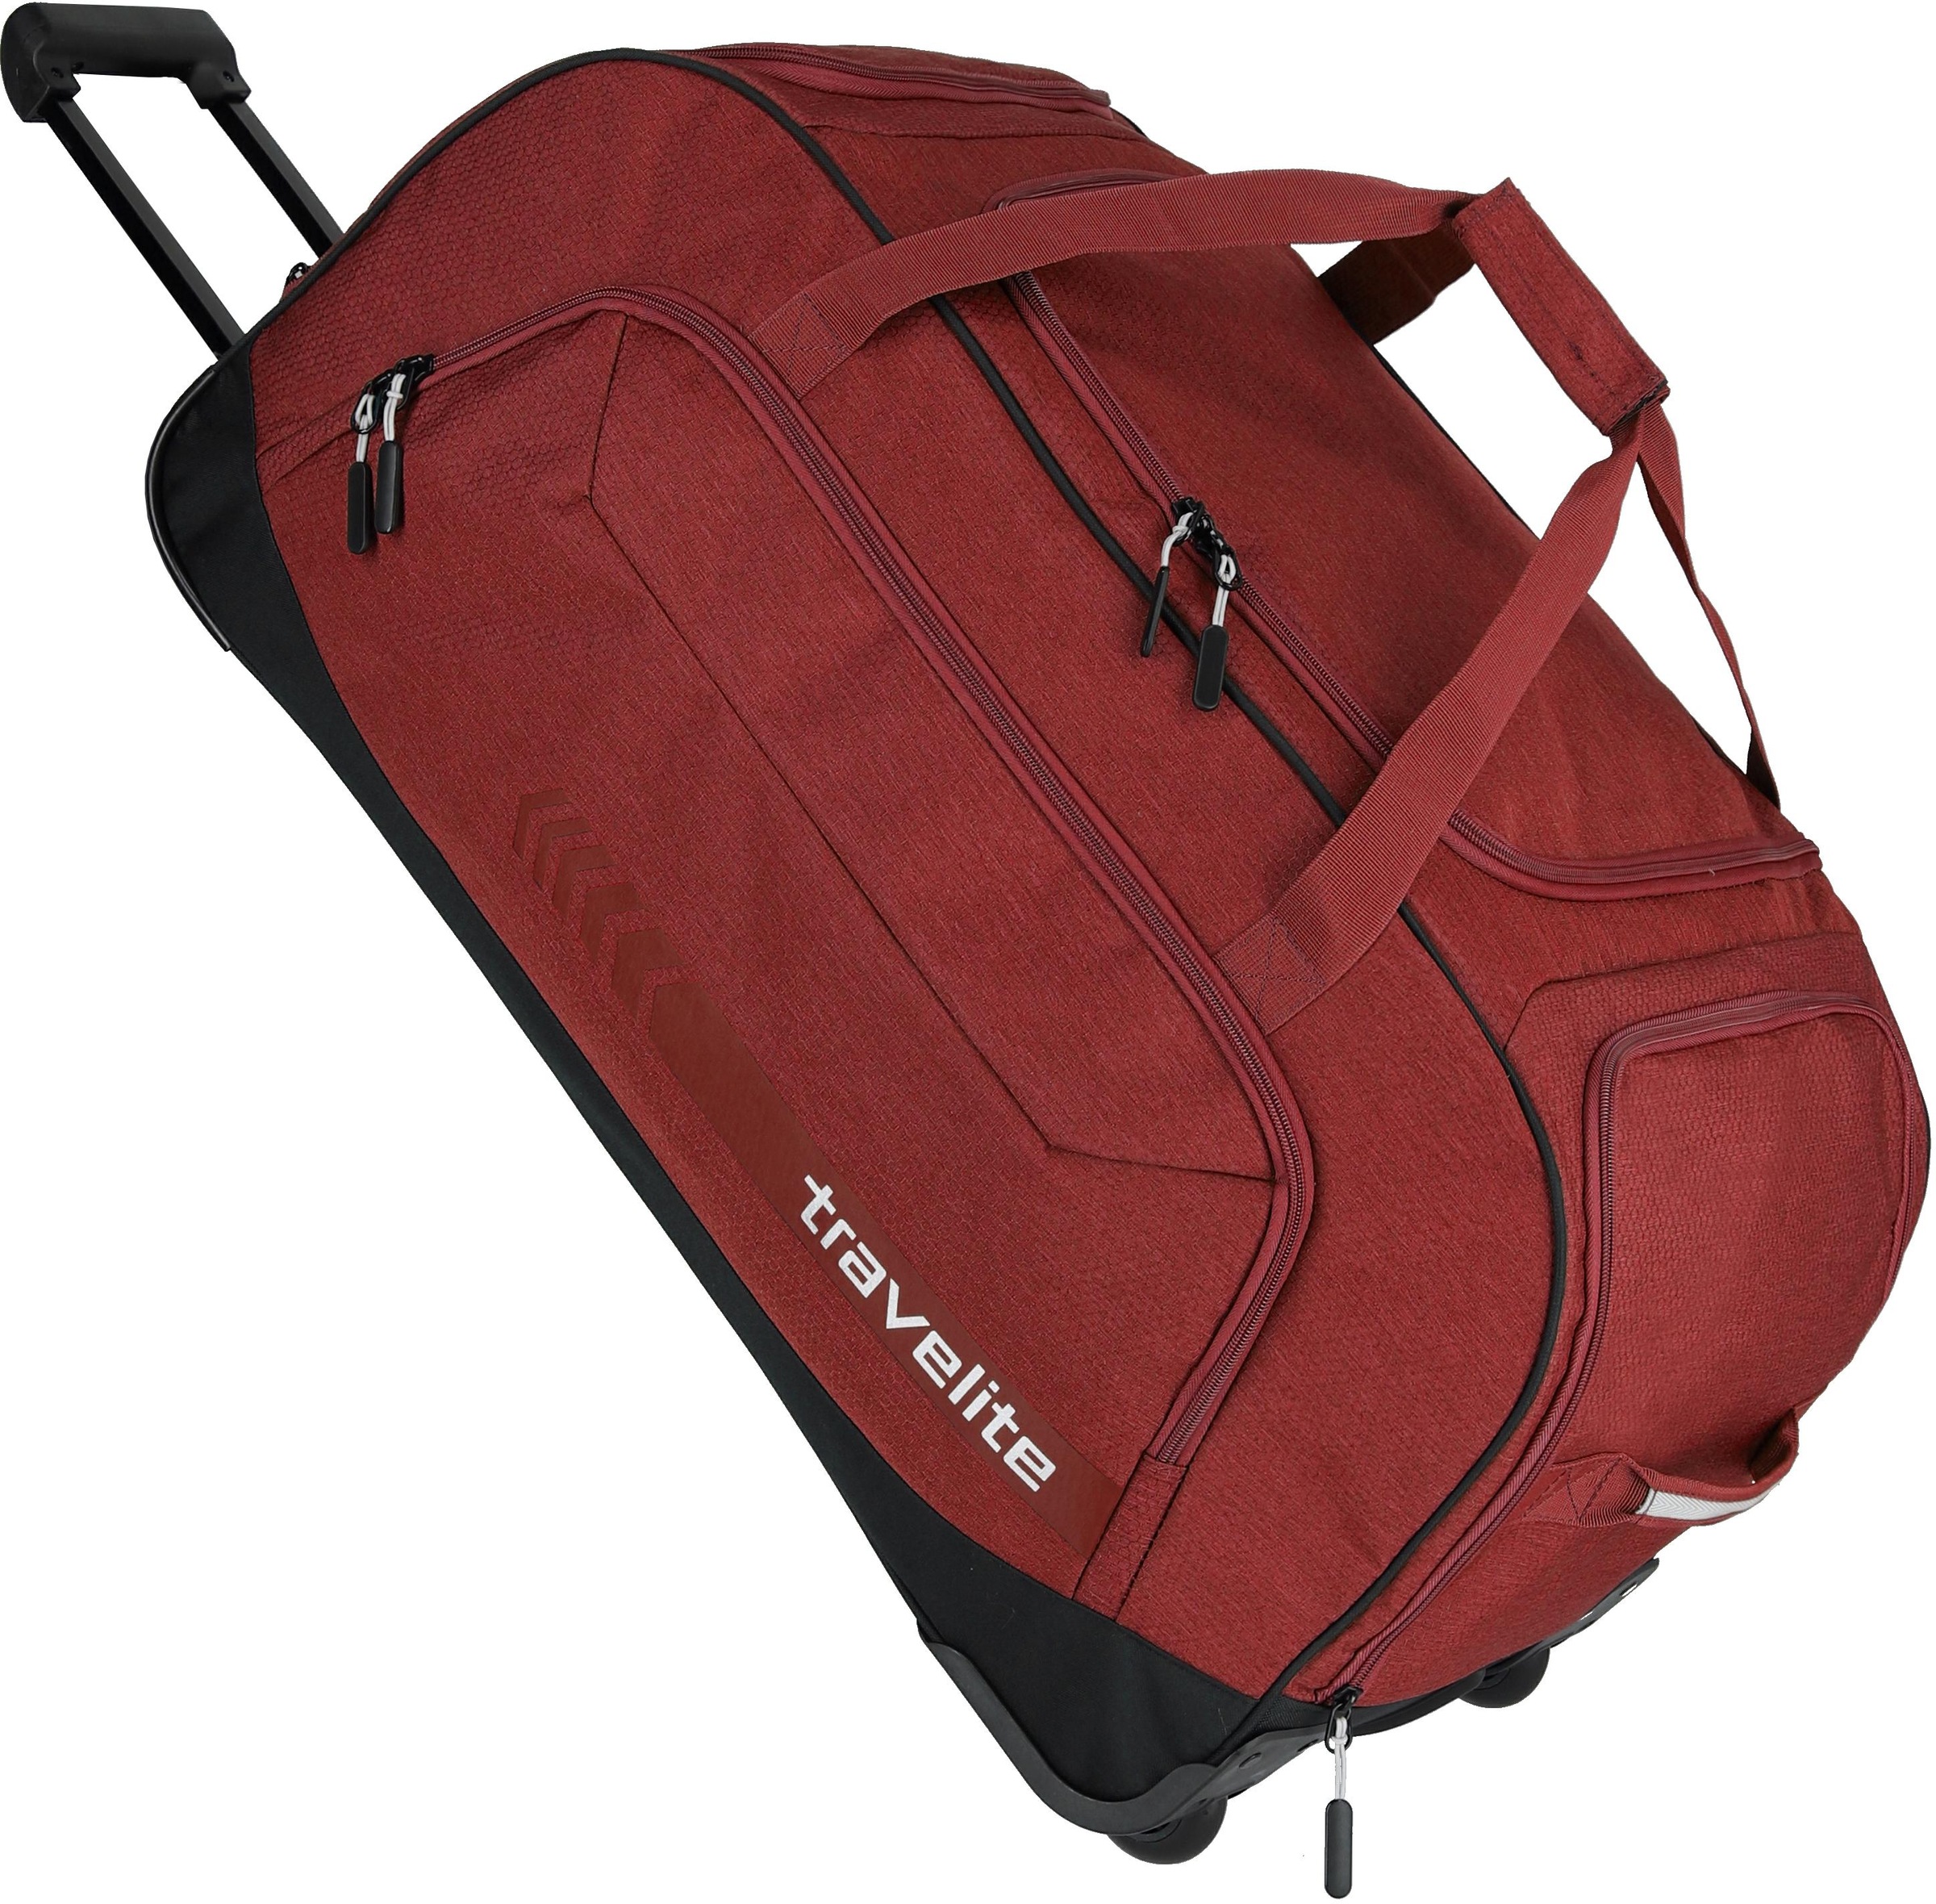 travelite Reisetasche »Kick Off XL, 77 cm«, Duffle Bag Reisegepäck Sporttasche Reisebag mit Trolleyfunktion